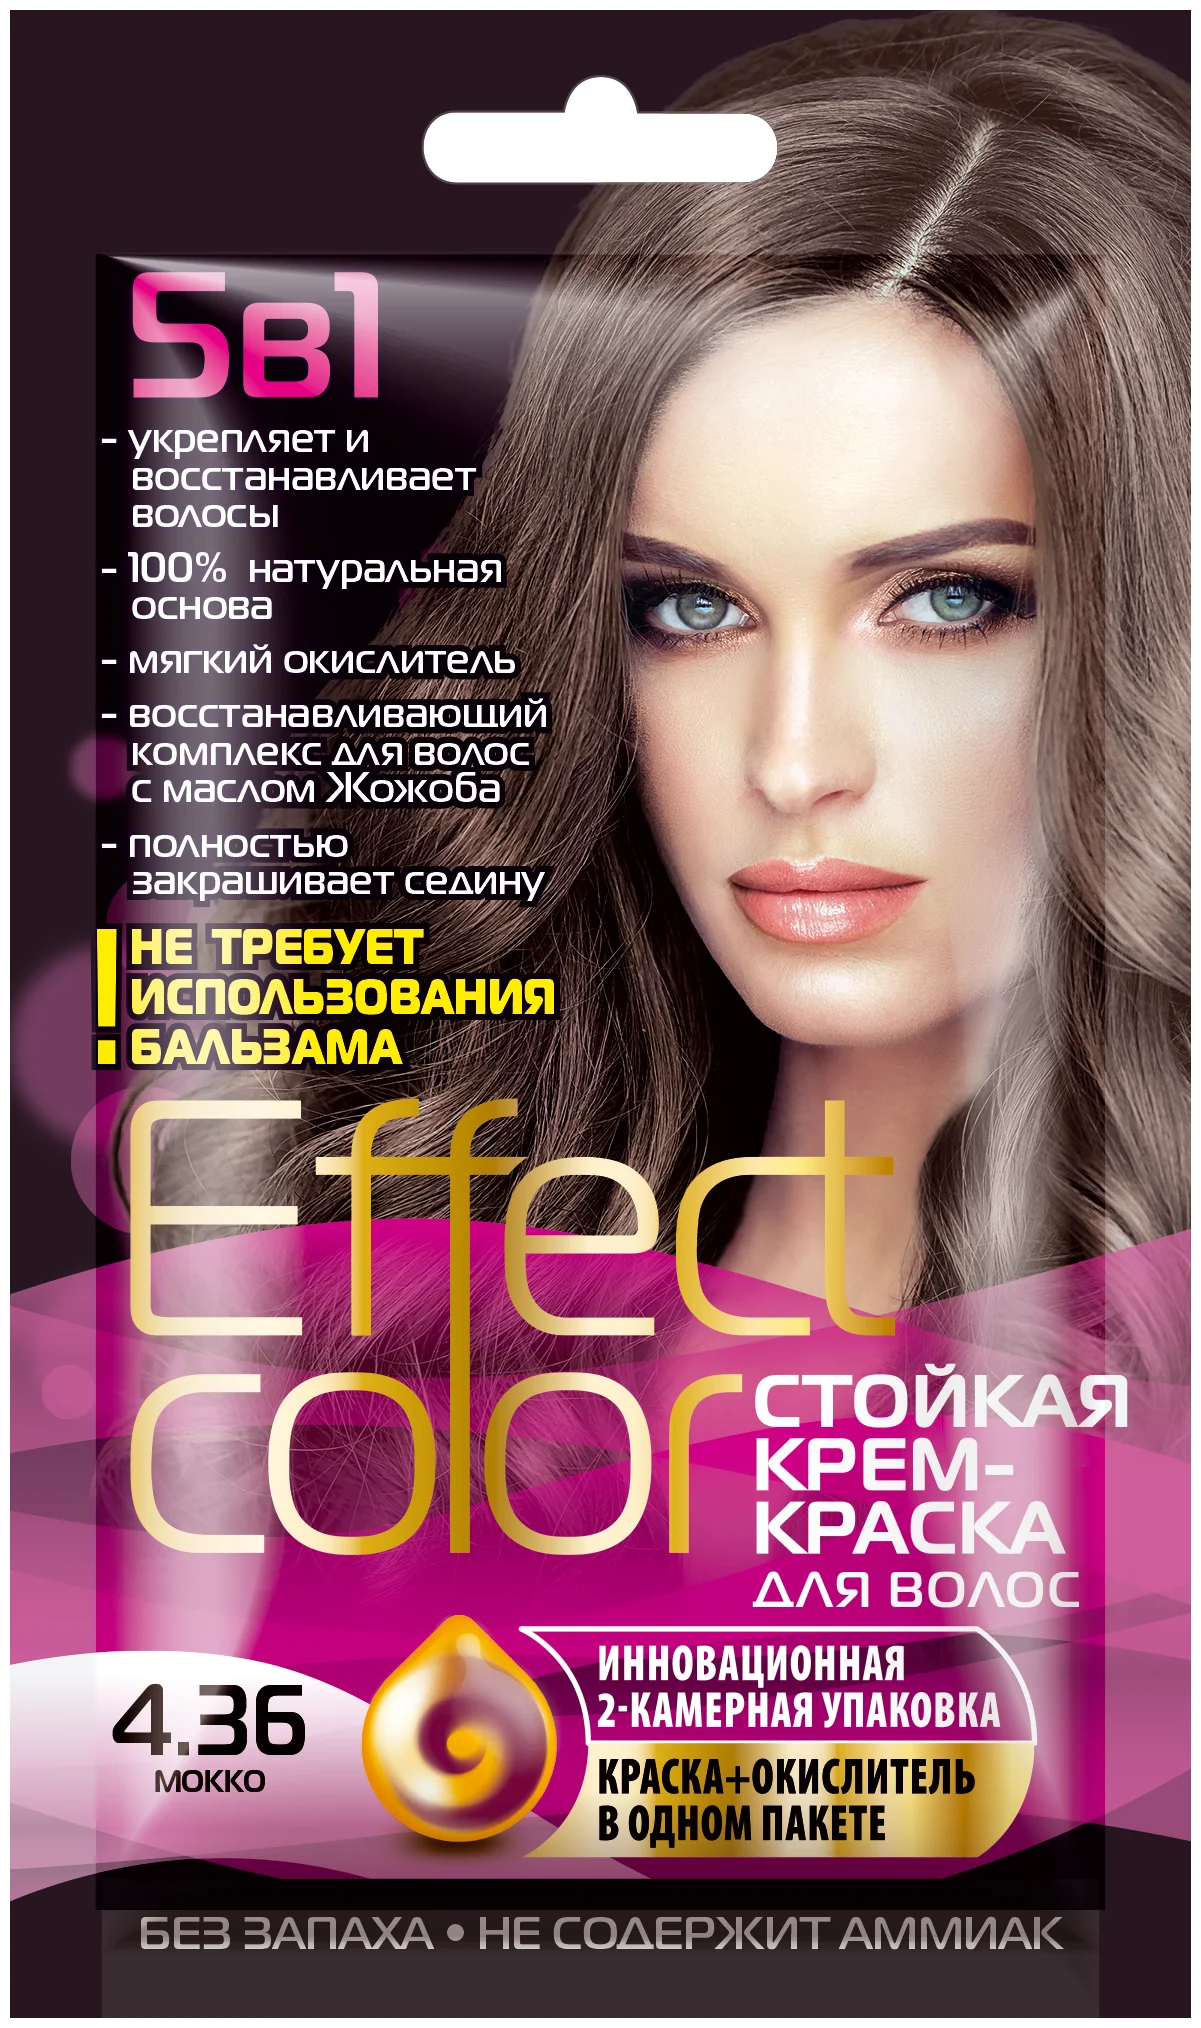 Cтойкая крем-краска для волос Effect Сolor тон мокко, 50 мл 2729920